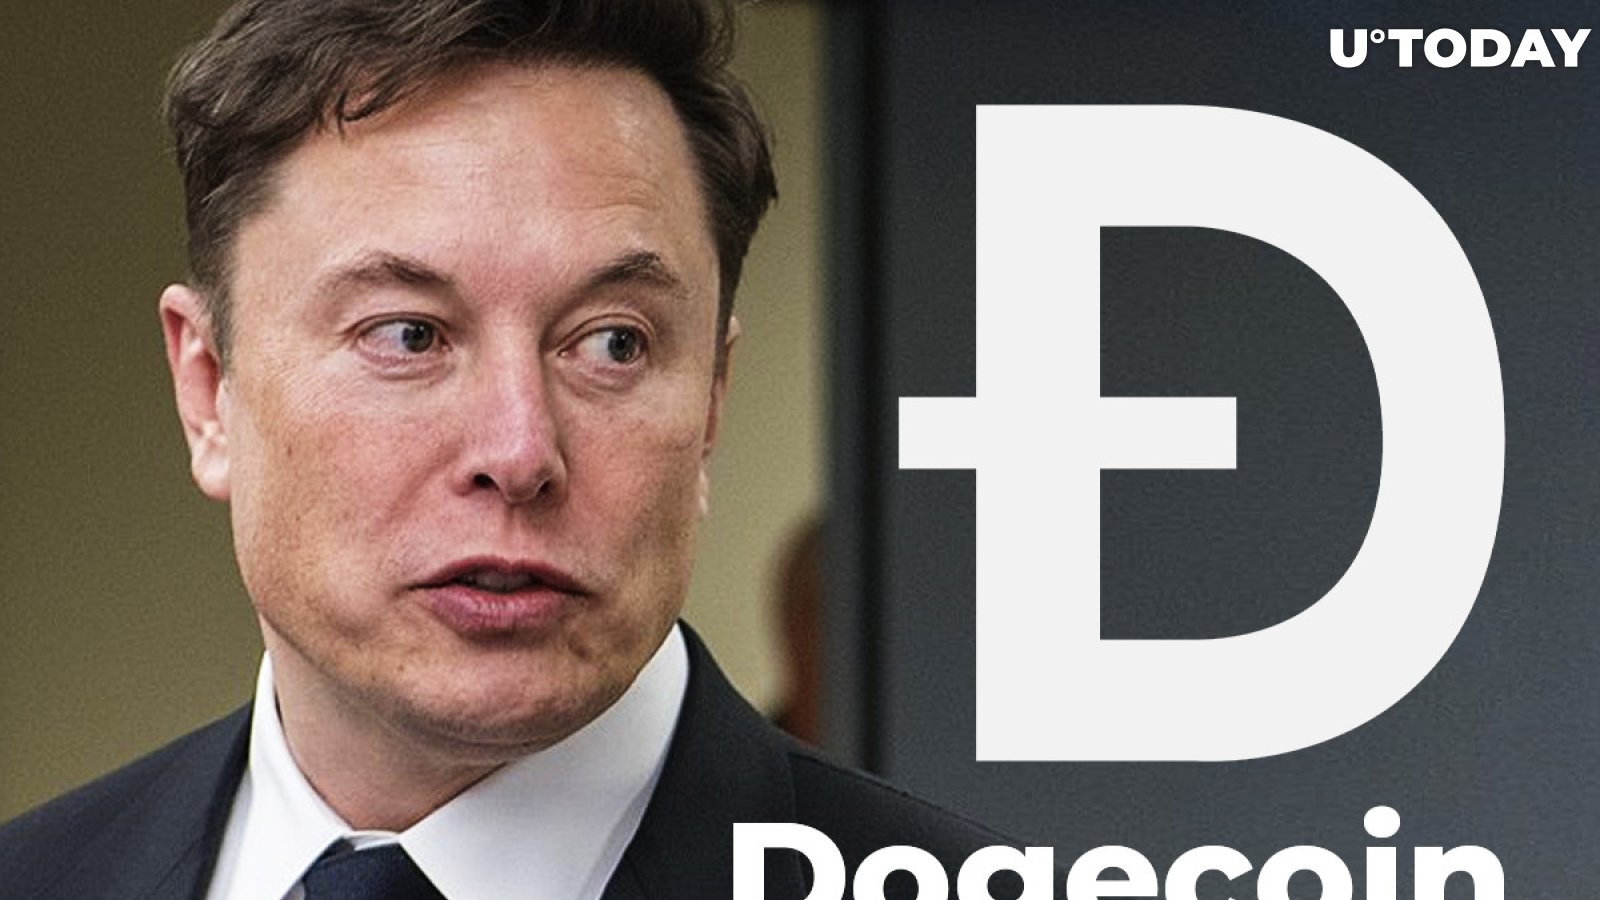 Elon Musk Asks Followers to Submit Dogecoin Development Ideas